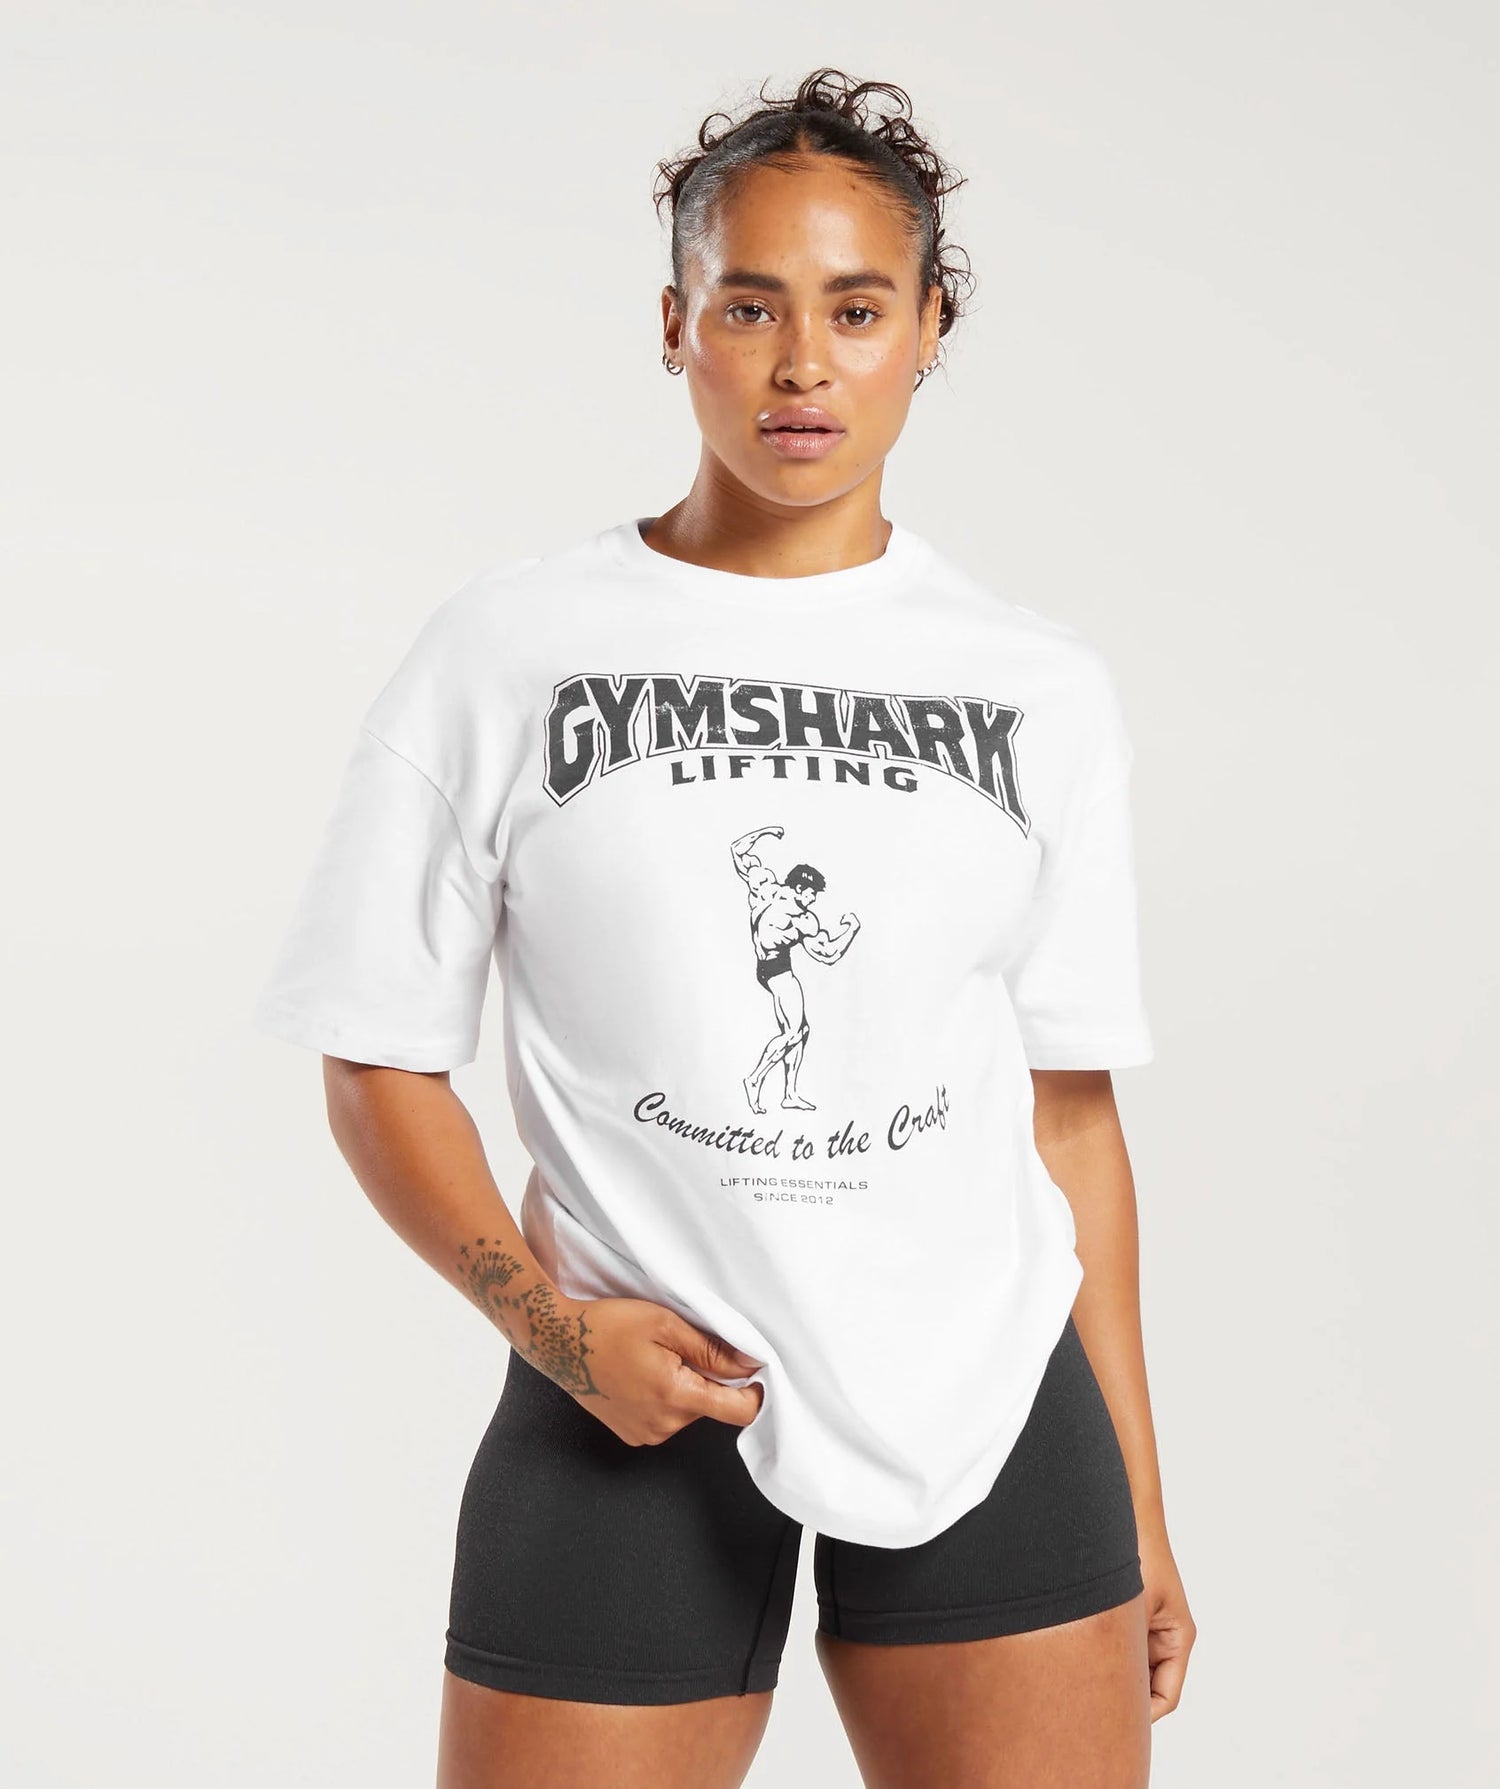 Camiseta Regata Fitness Gym Shark Importado - Tamanho M